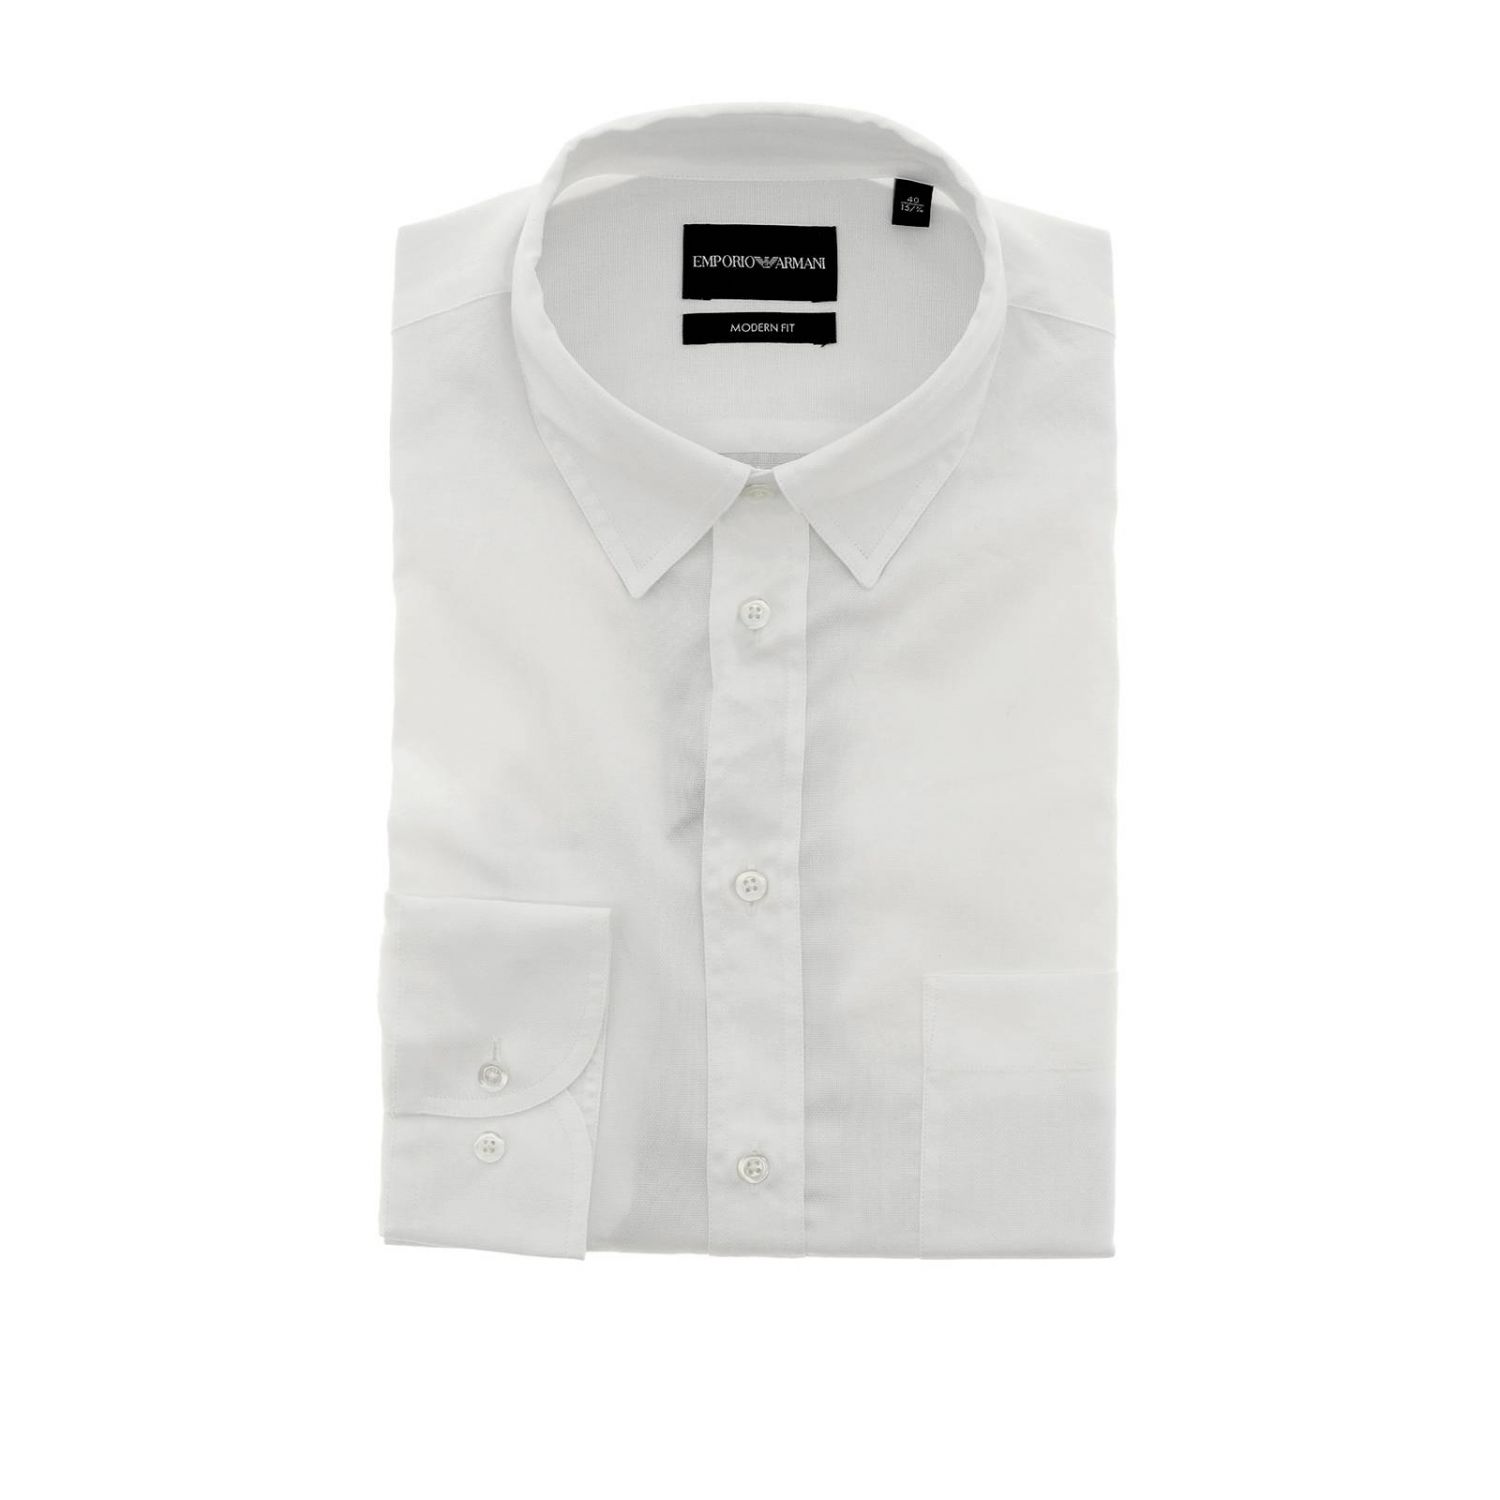 Emporio Armani Outlet: T-shirt men | Shirt Emporio Armani Men White ...